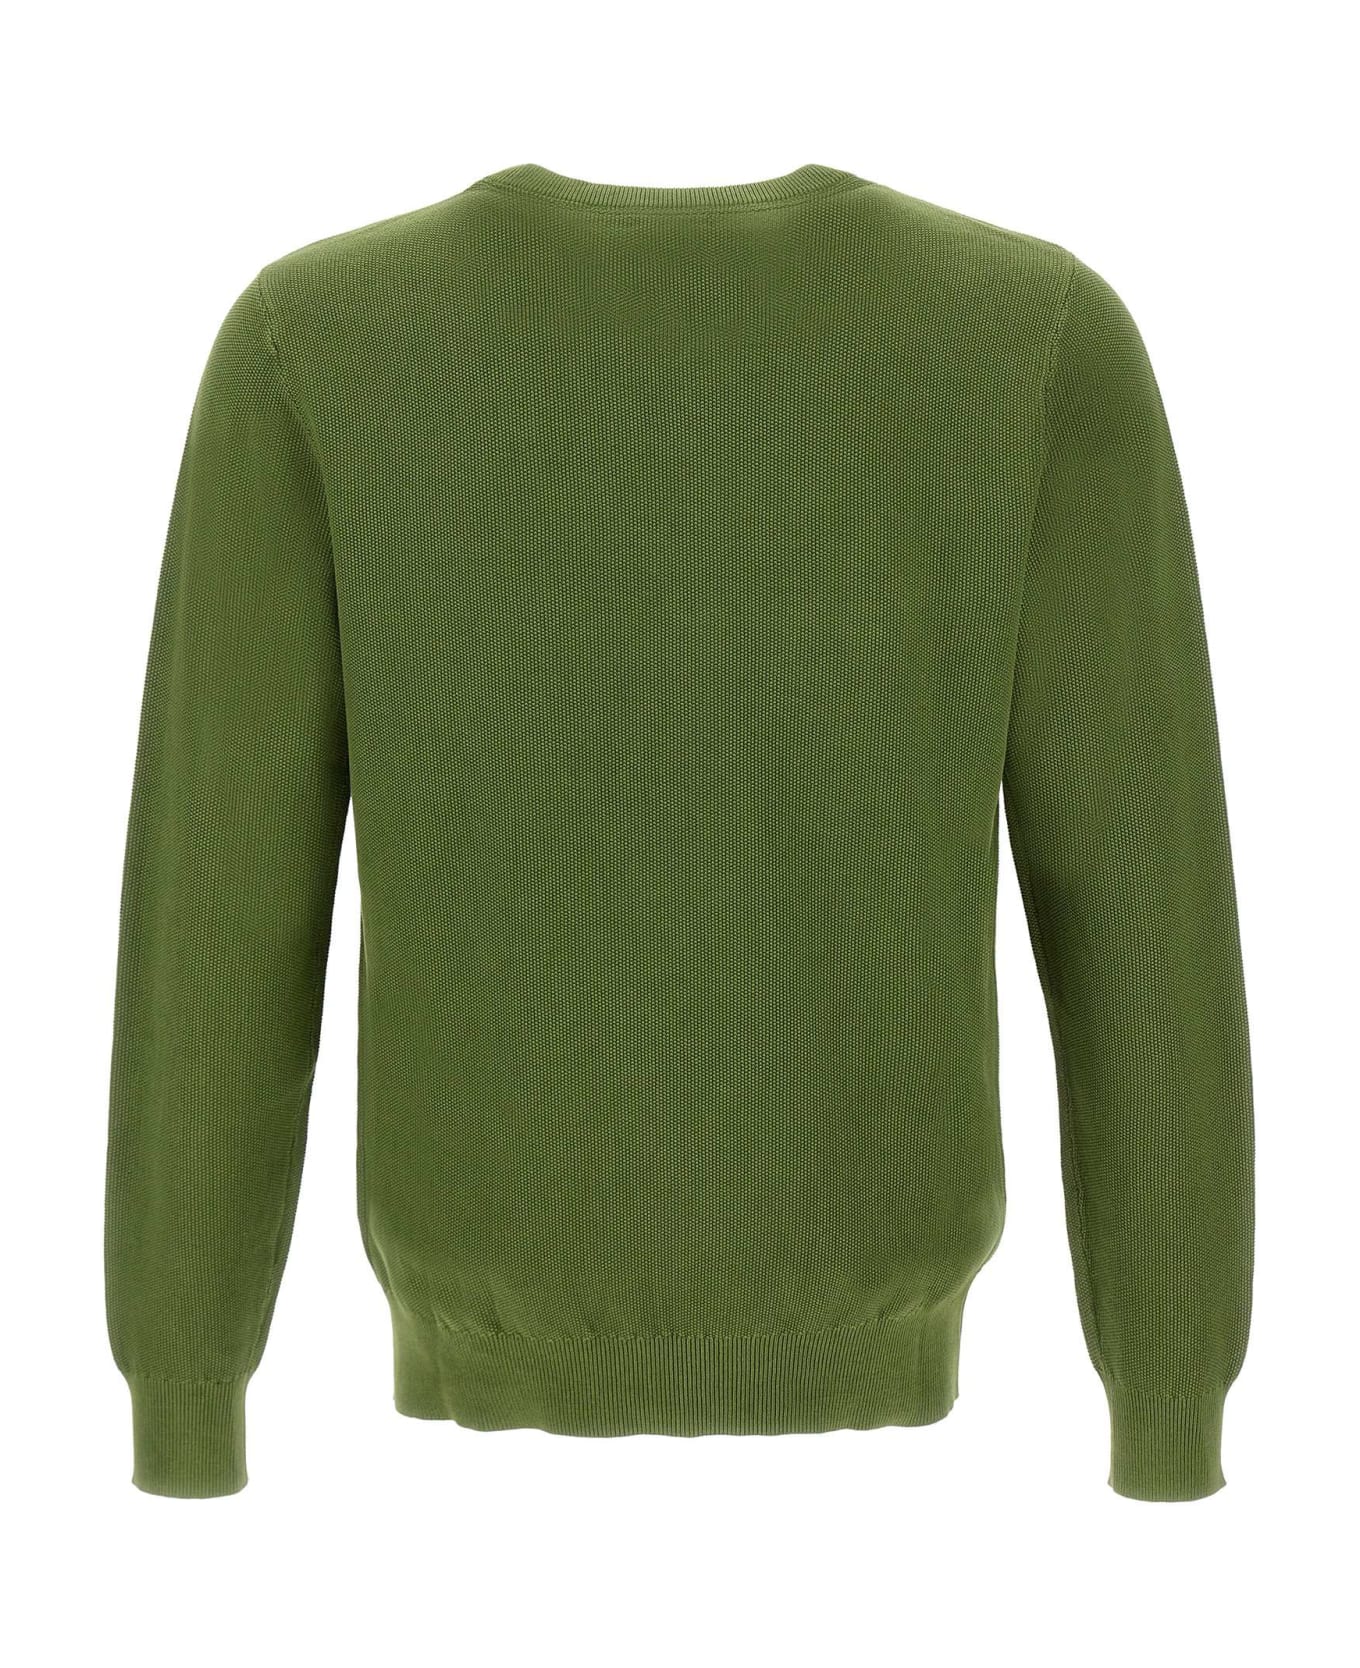 Sun 68 "round Vintage" Sweater Cotton - GREEN ニットウェア